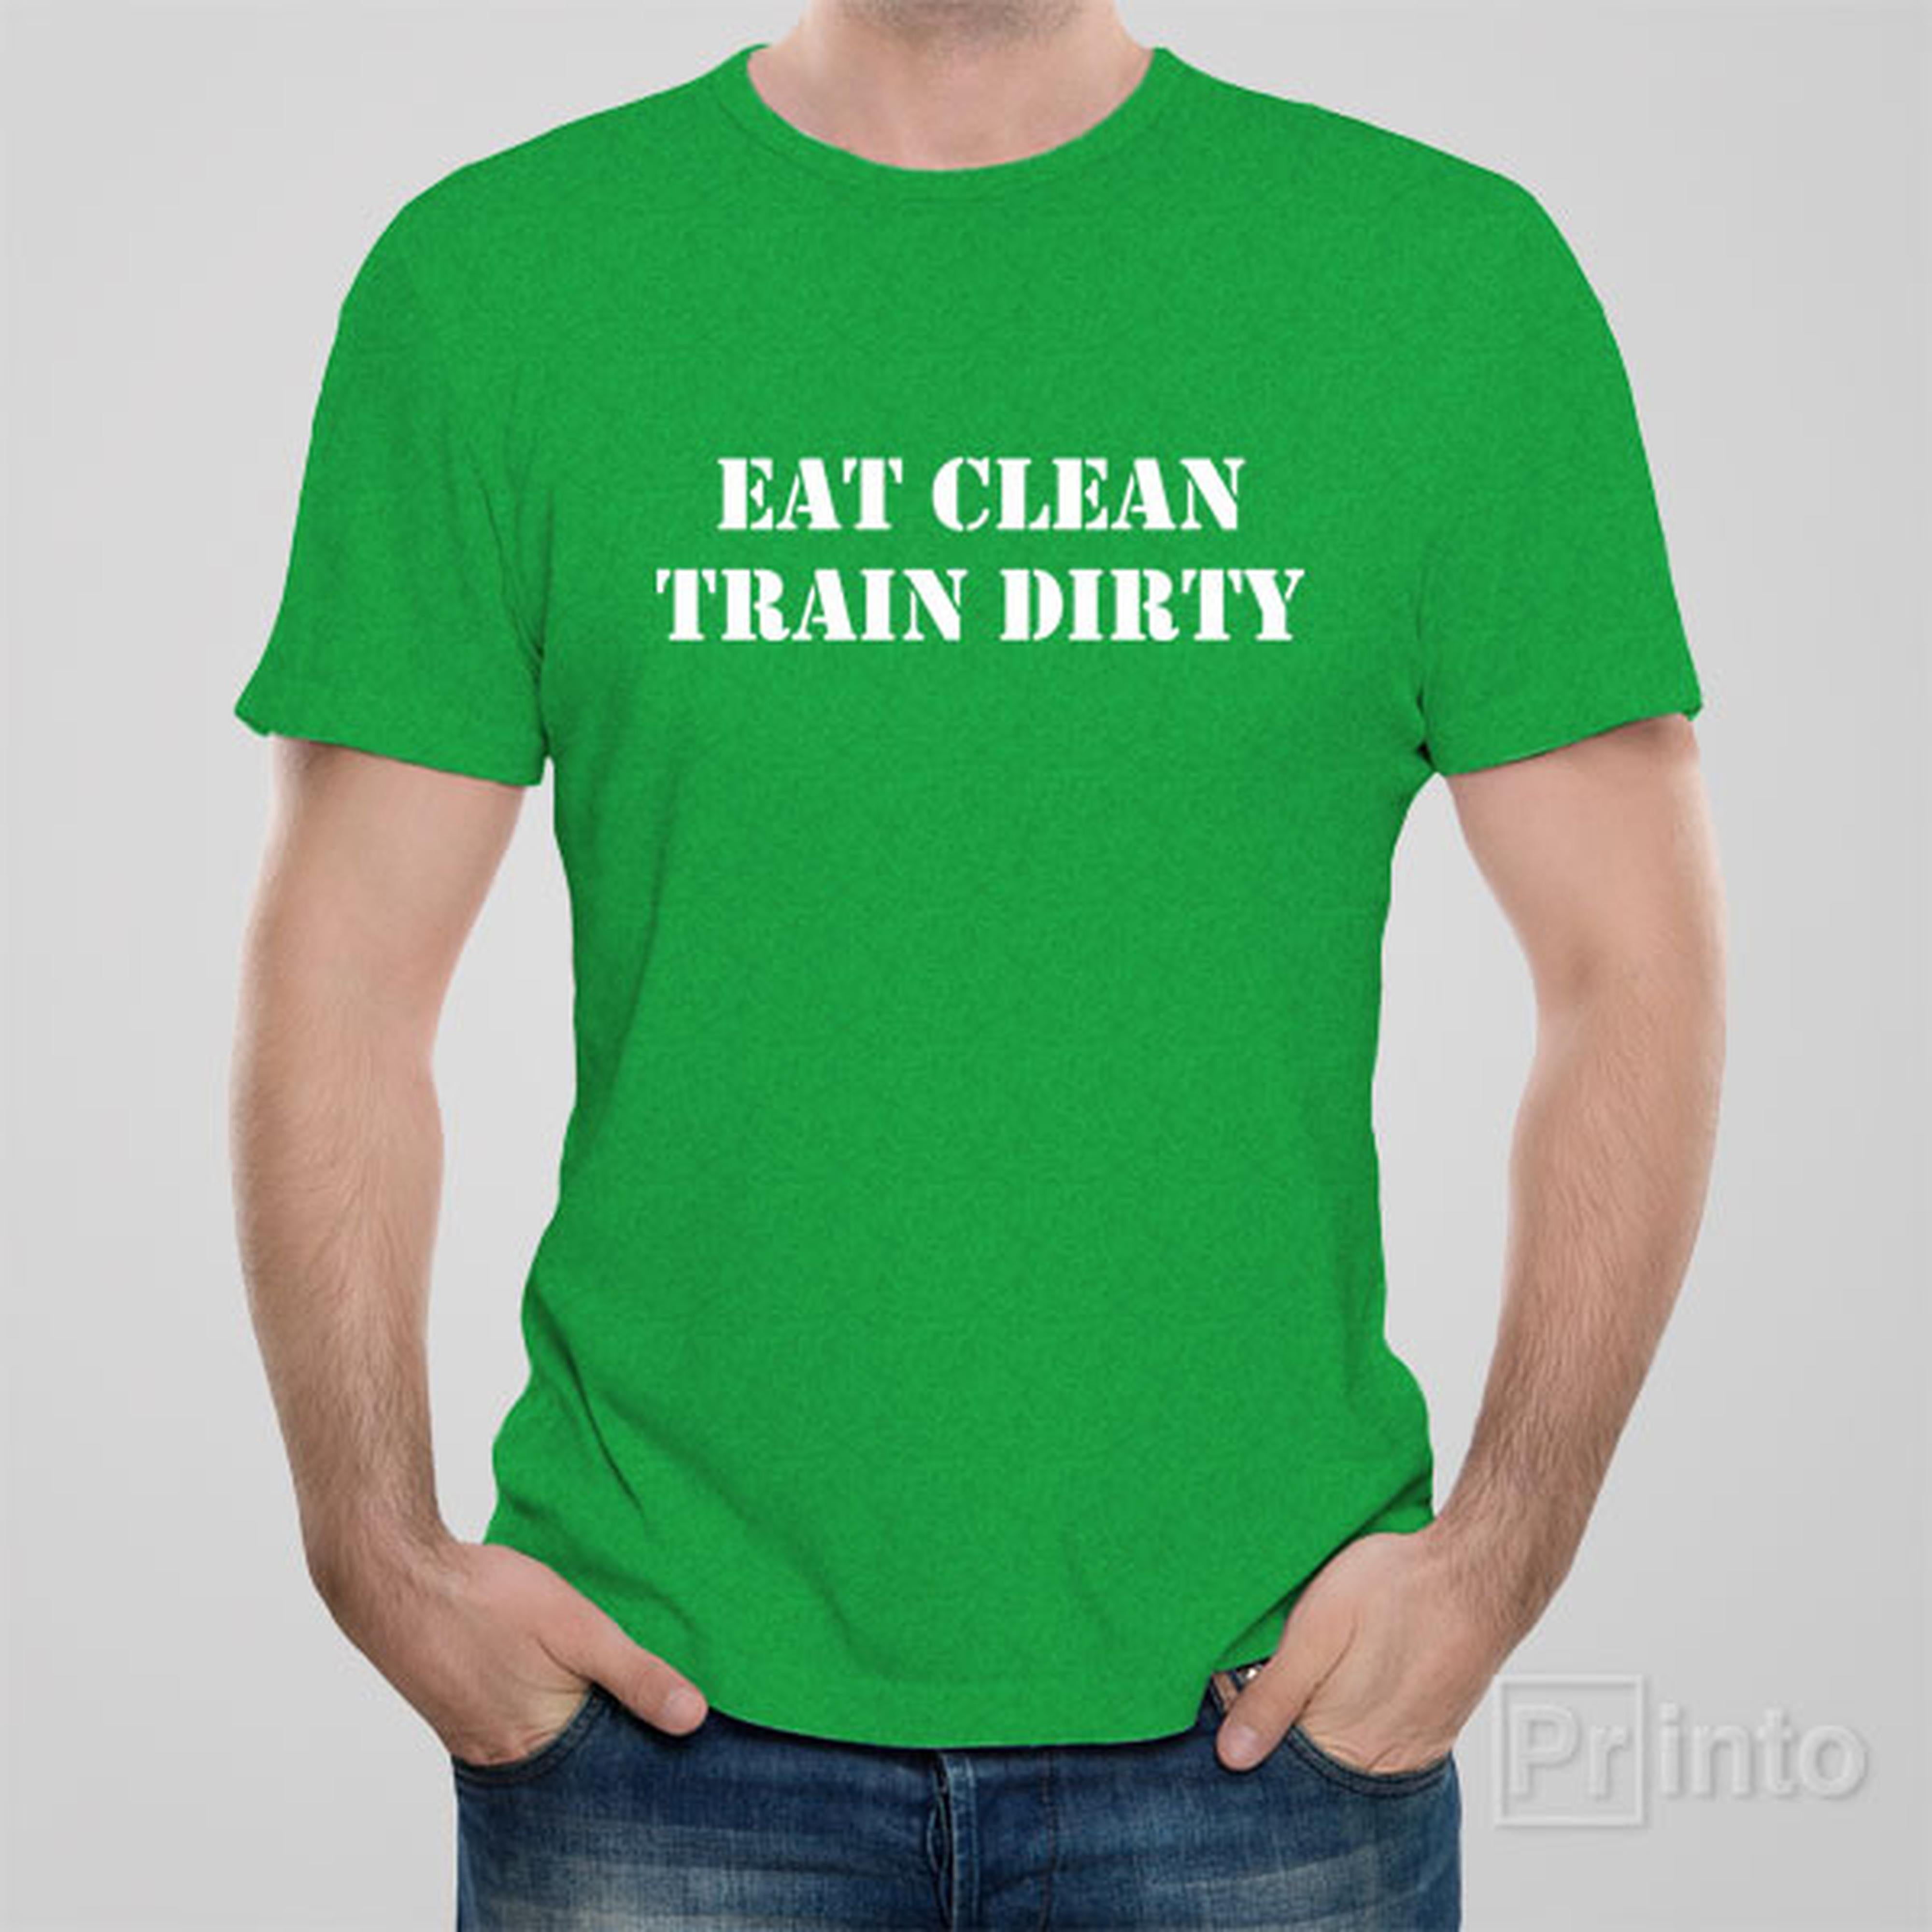 eat-clean-train-dirty-t-shirt